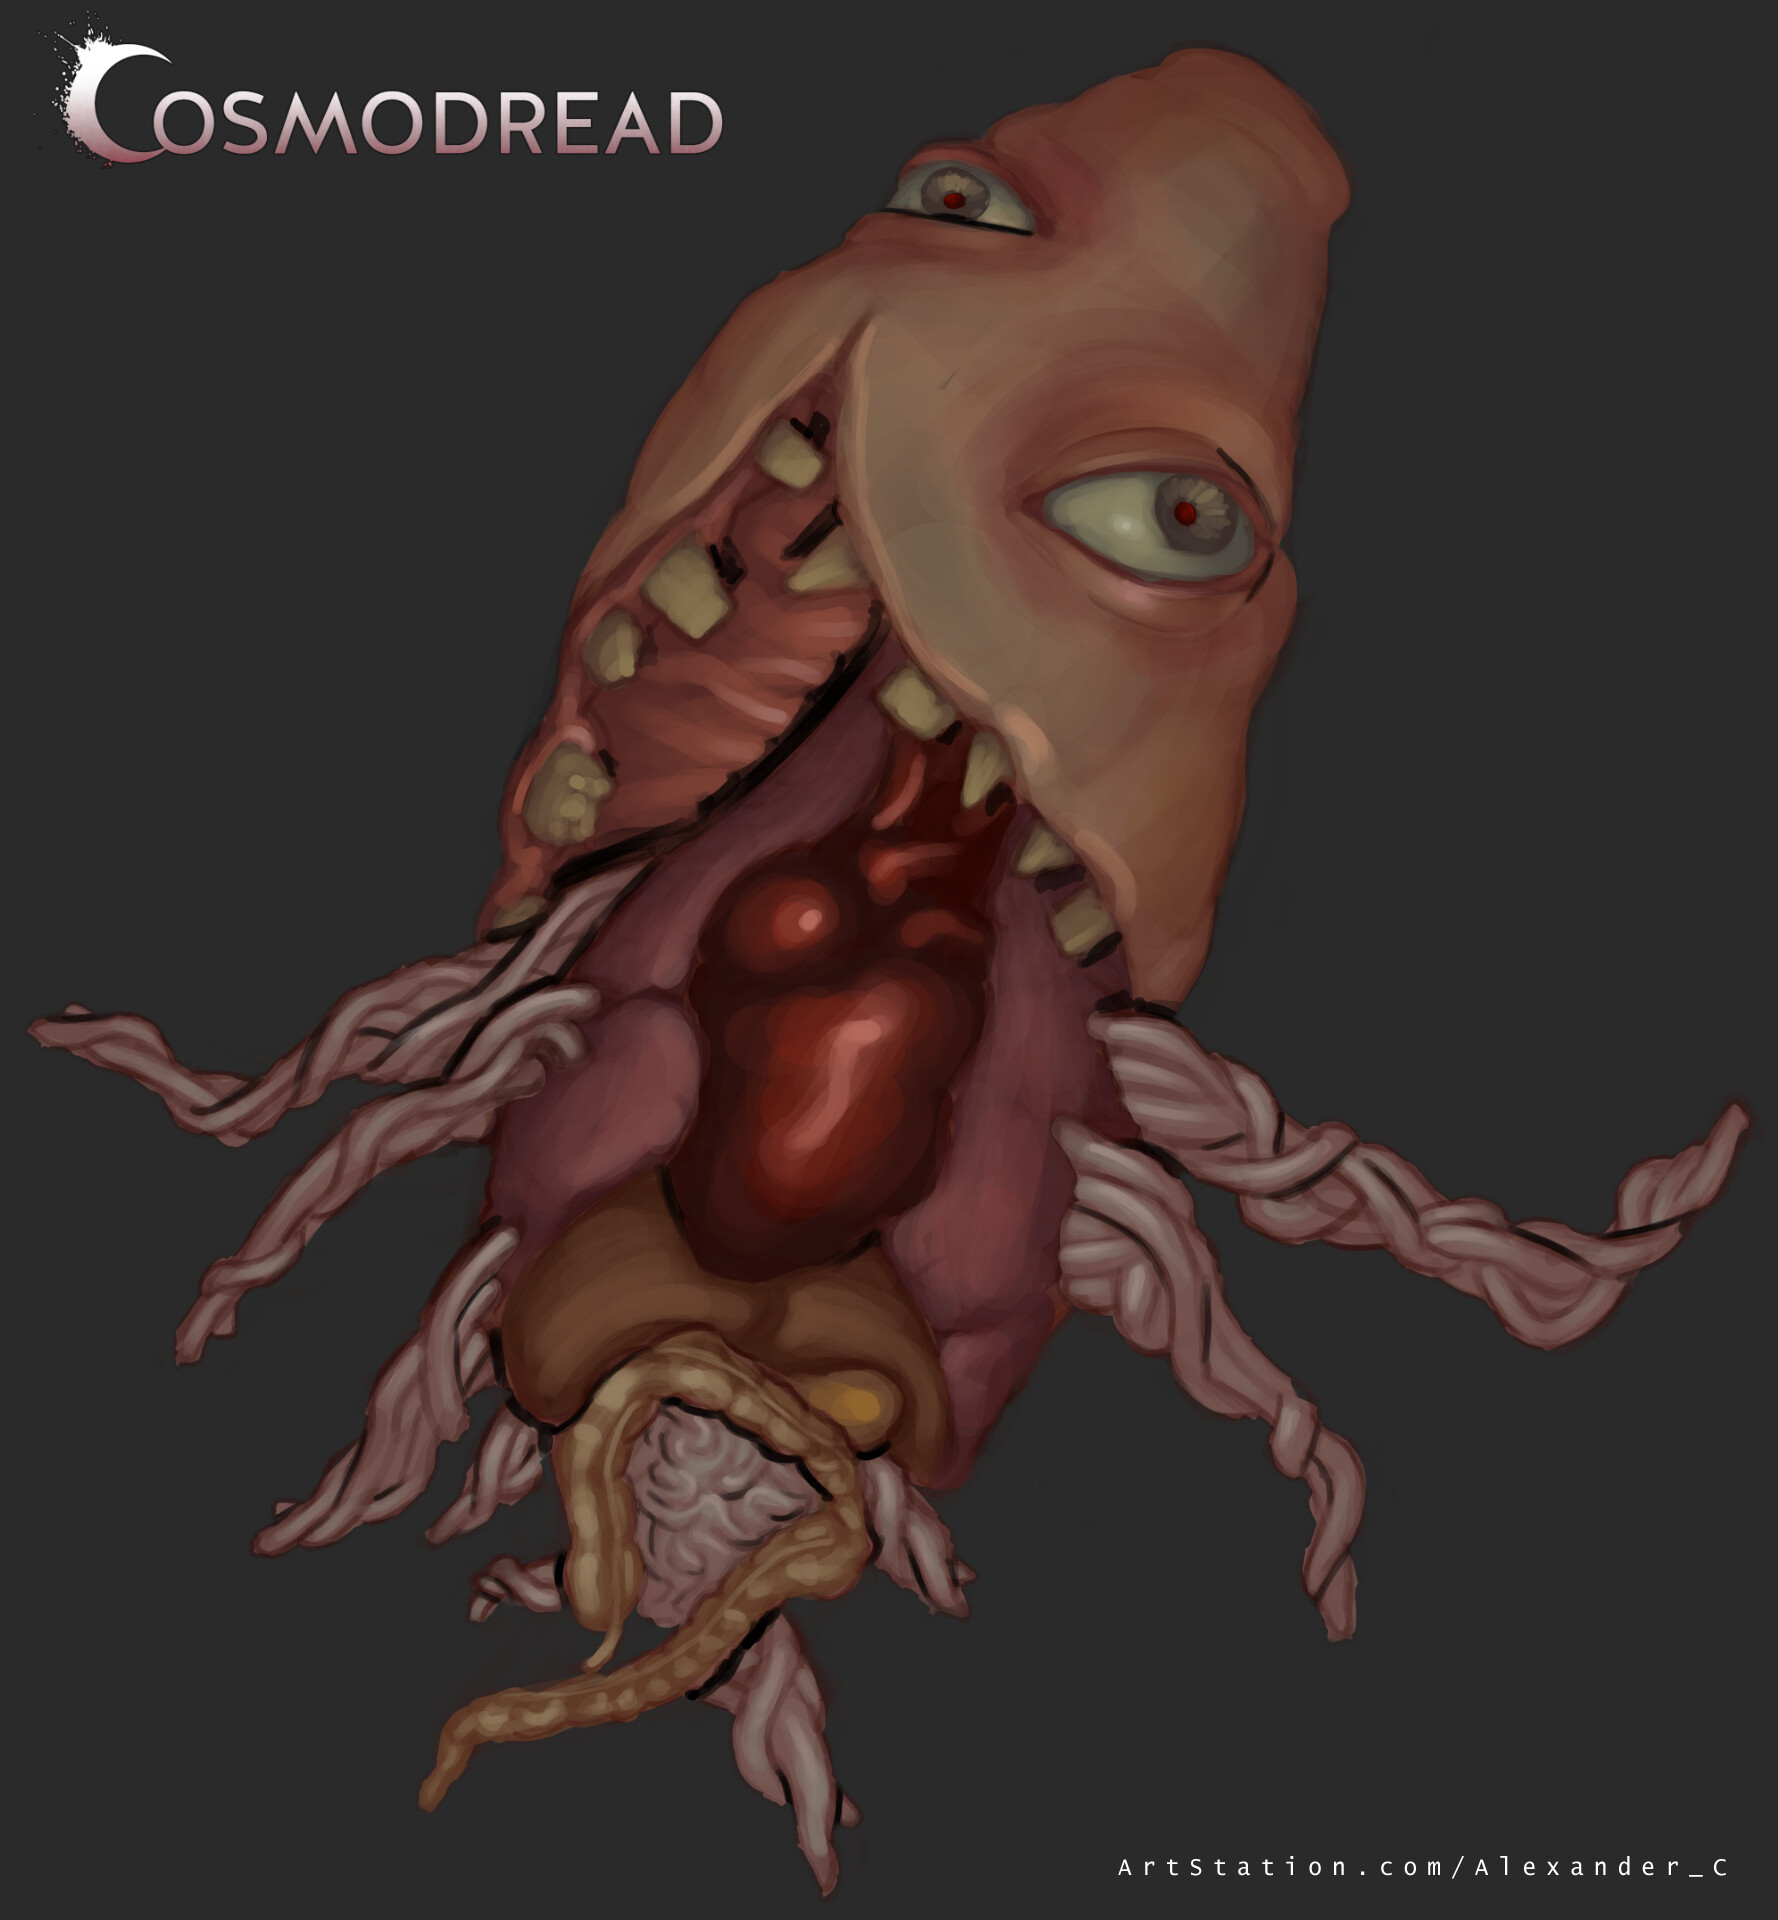 ArtStation - Cosmodread creature designs